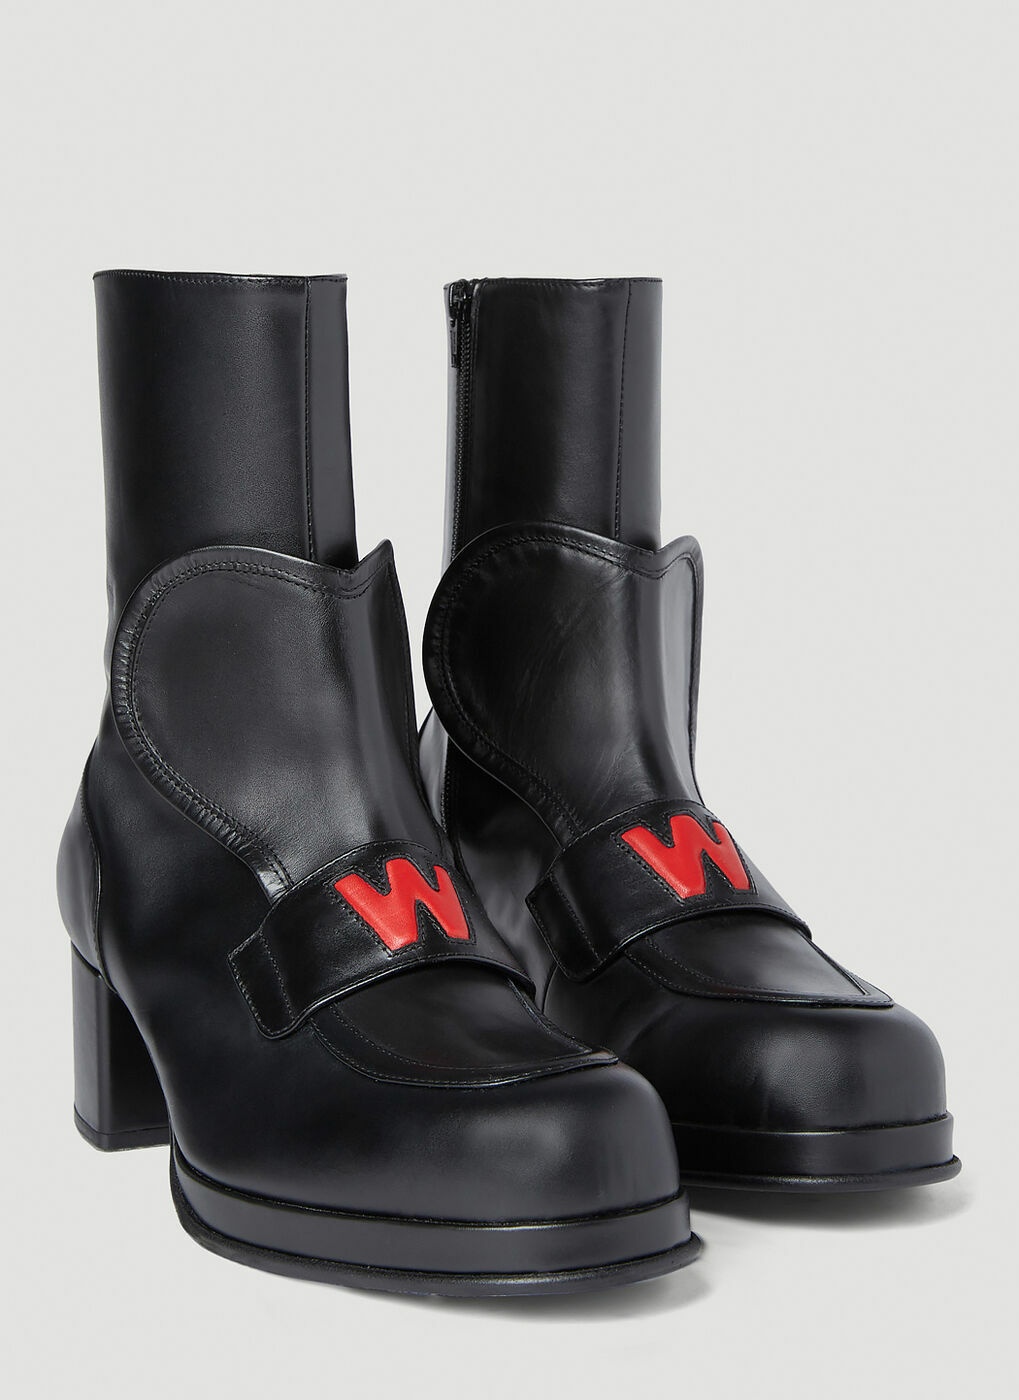 Walter Van Beirendonck - Love Heeled Boots in Black Walter Van Beirendonck